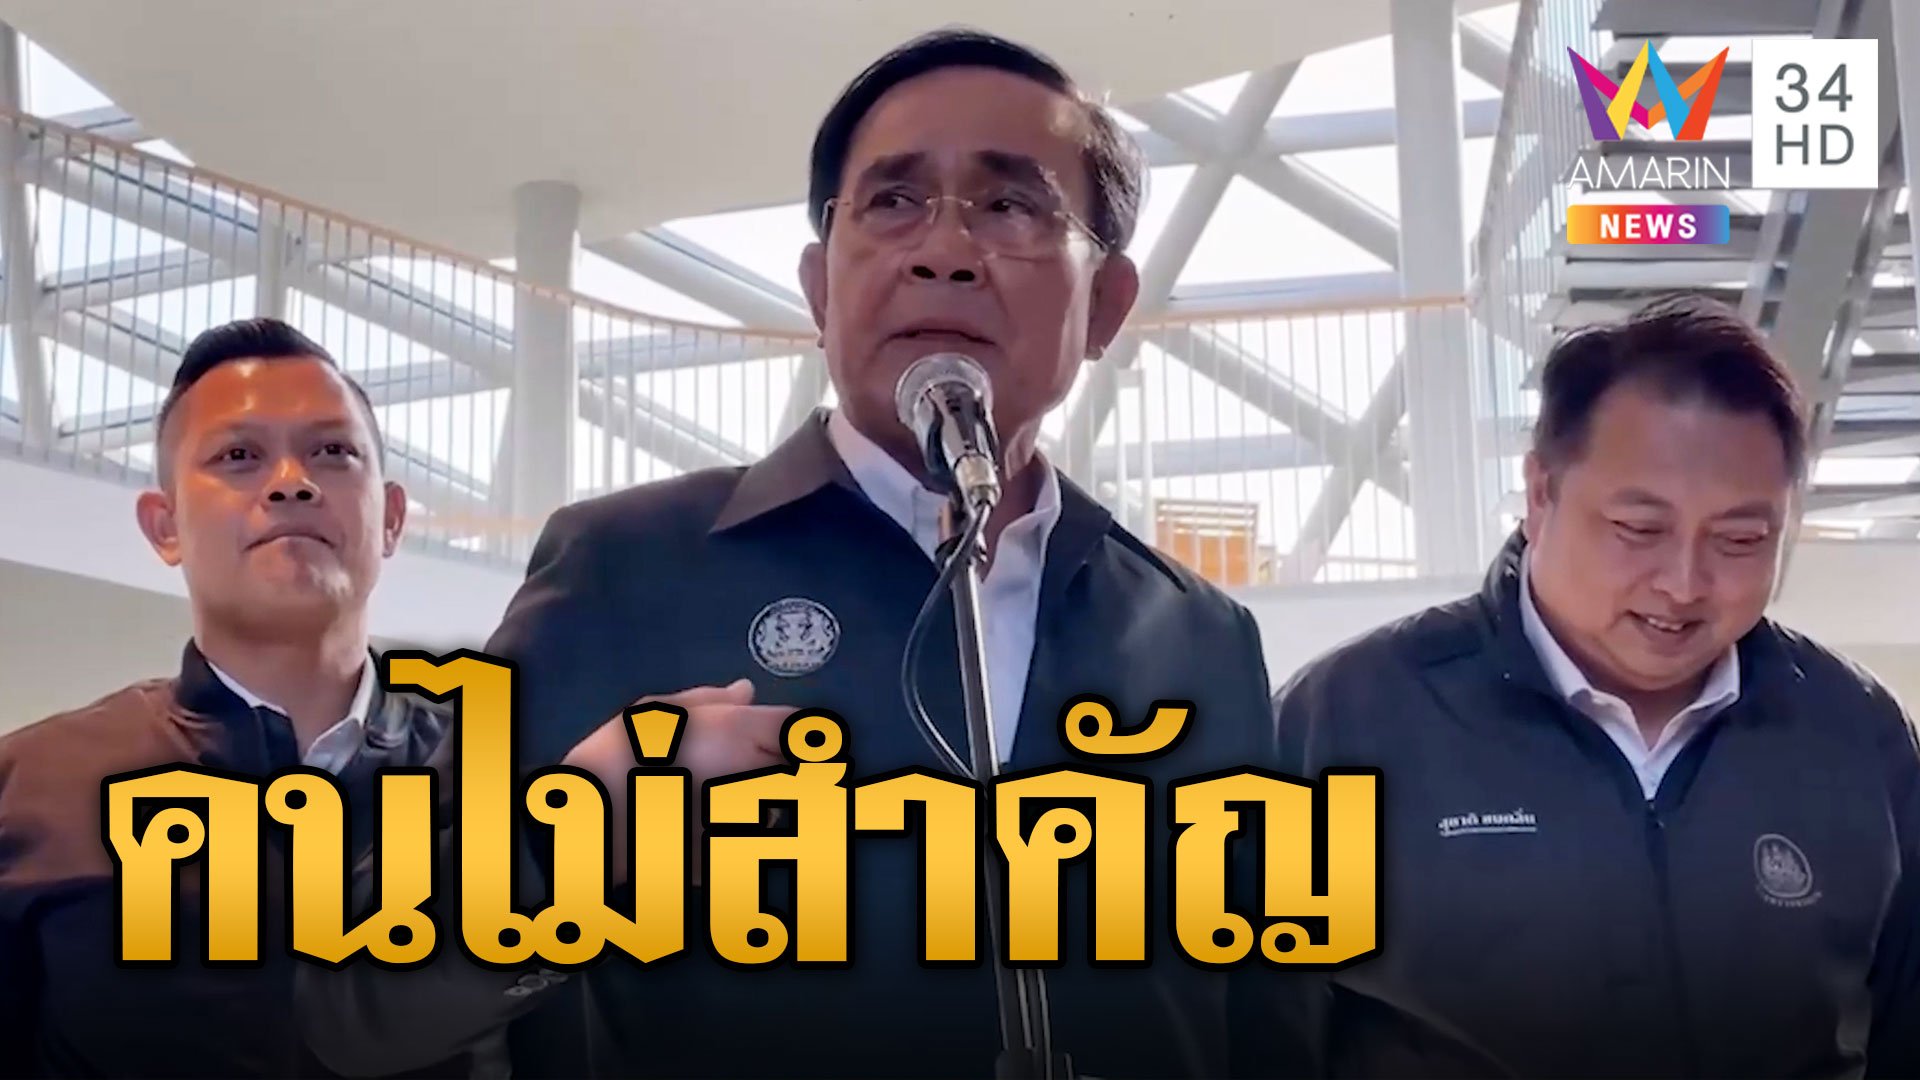 "บิ๊กตู่" ลั่นอย่ามาถามผม "เป็นคนไม่สำคัญ" ไม่มีความเห็นเพื่อไทยสลายขั้วตั้งรัฐบาล | ข่าวอรุณอมรินทร์ | 10 ส.ค. 66 | AMARIN TVHD34